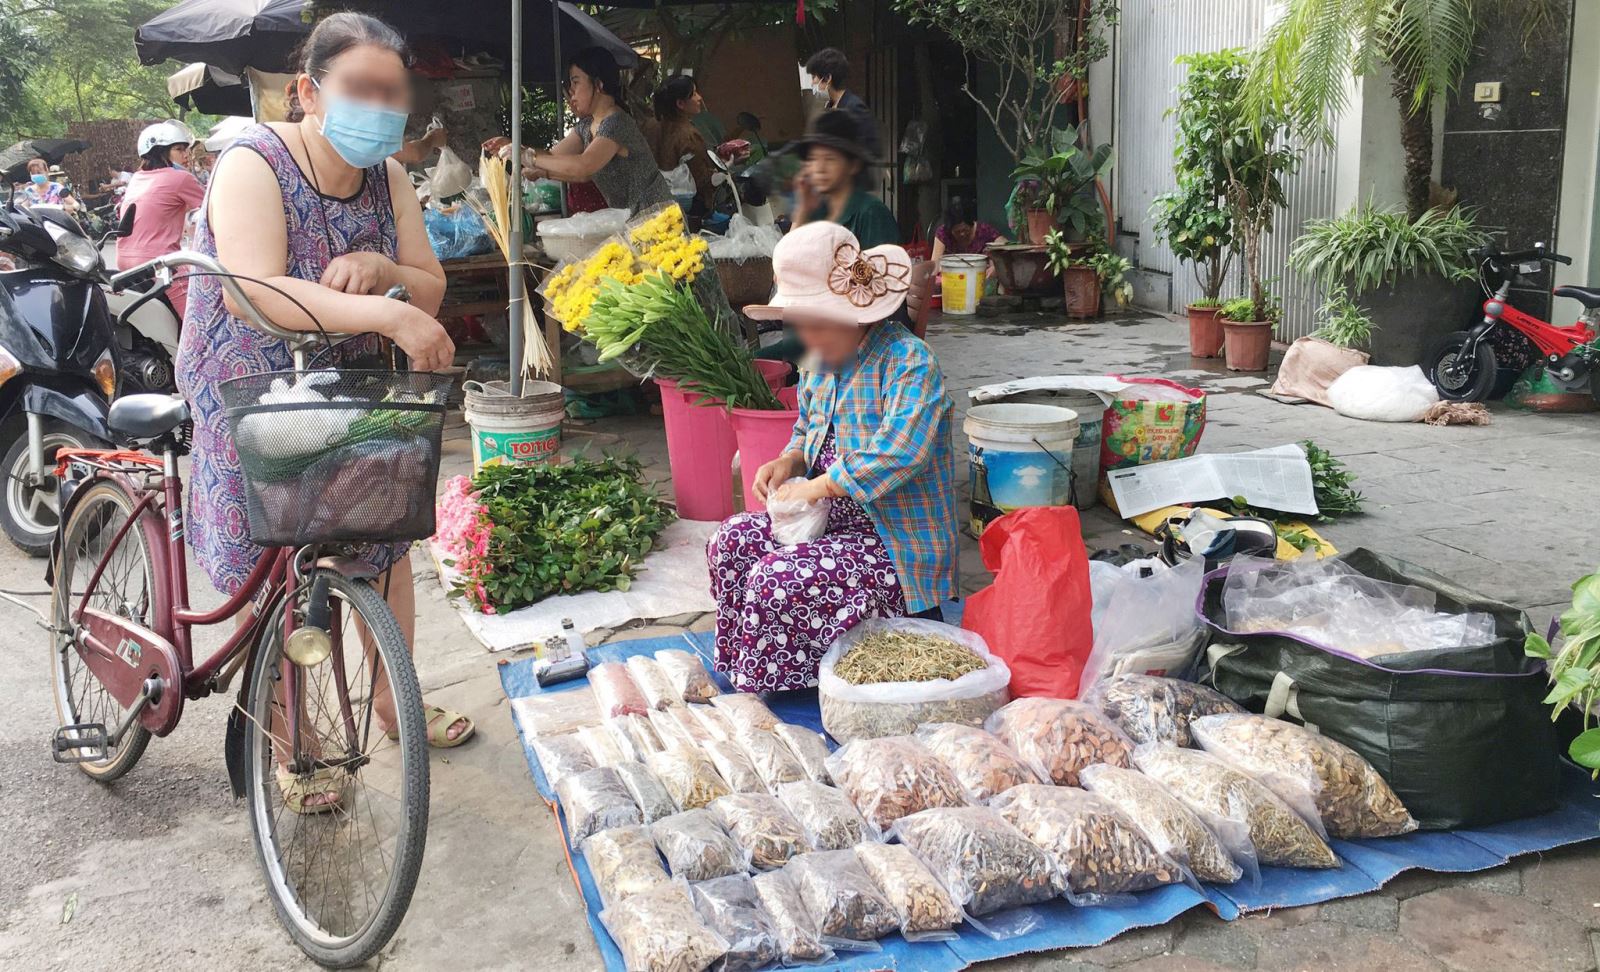 Thảo được bày bán tại chợ cóc thuộc phường Phương Liệt, Thanh Xuân, Hà Nội.